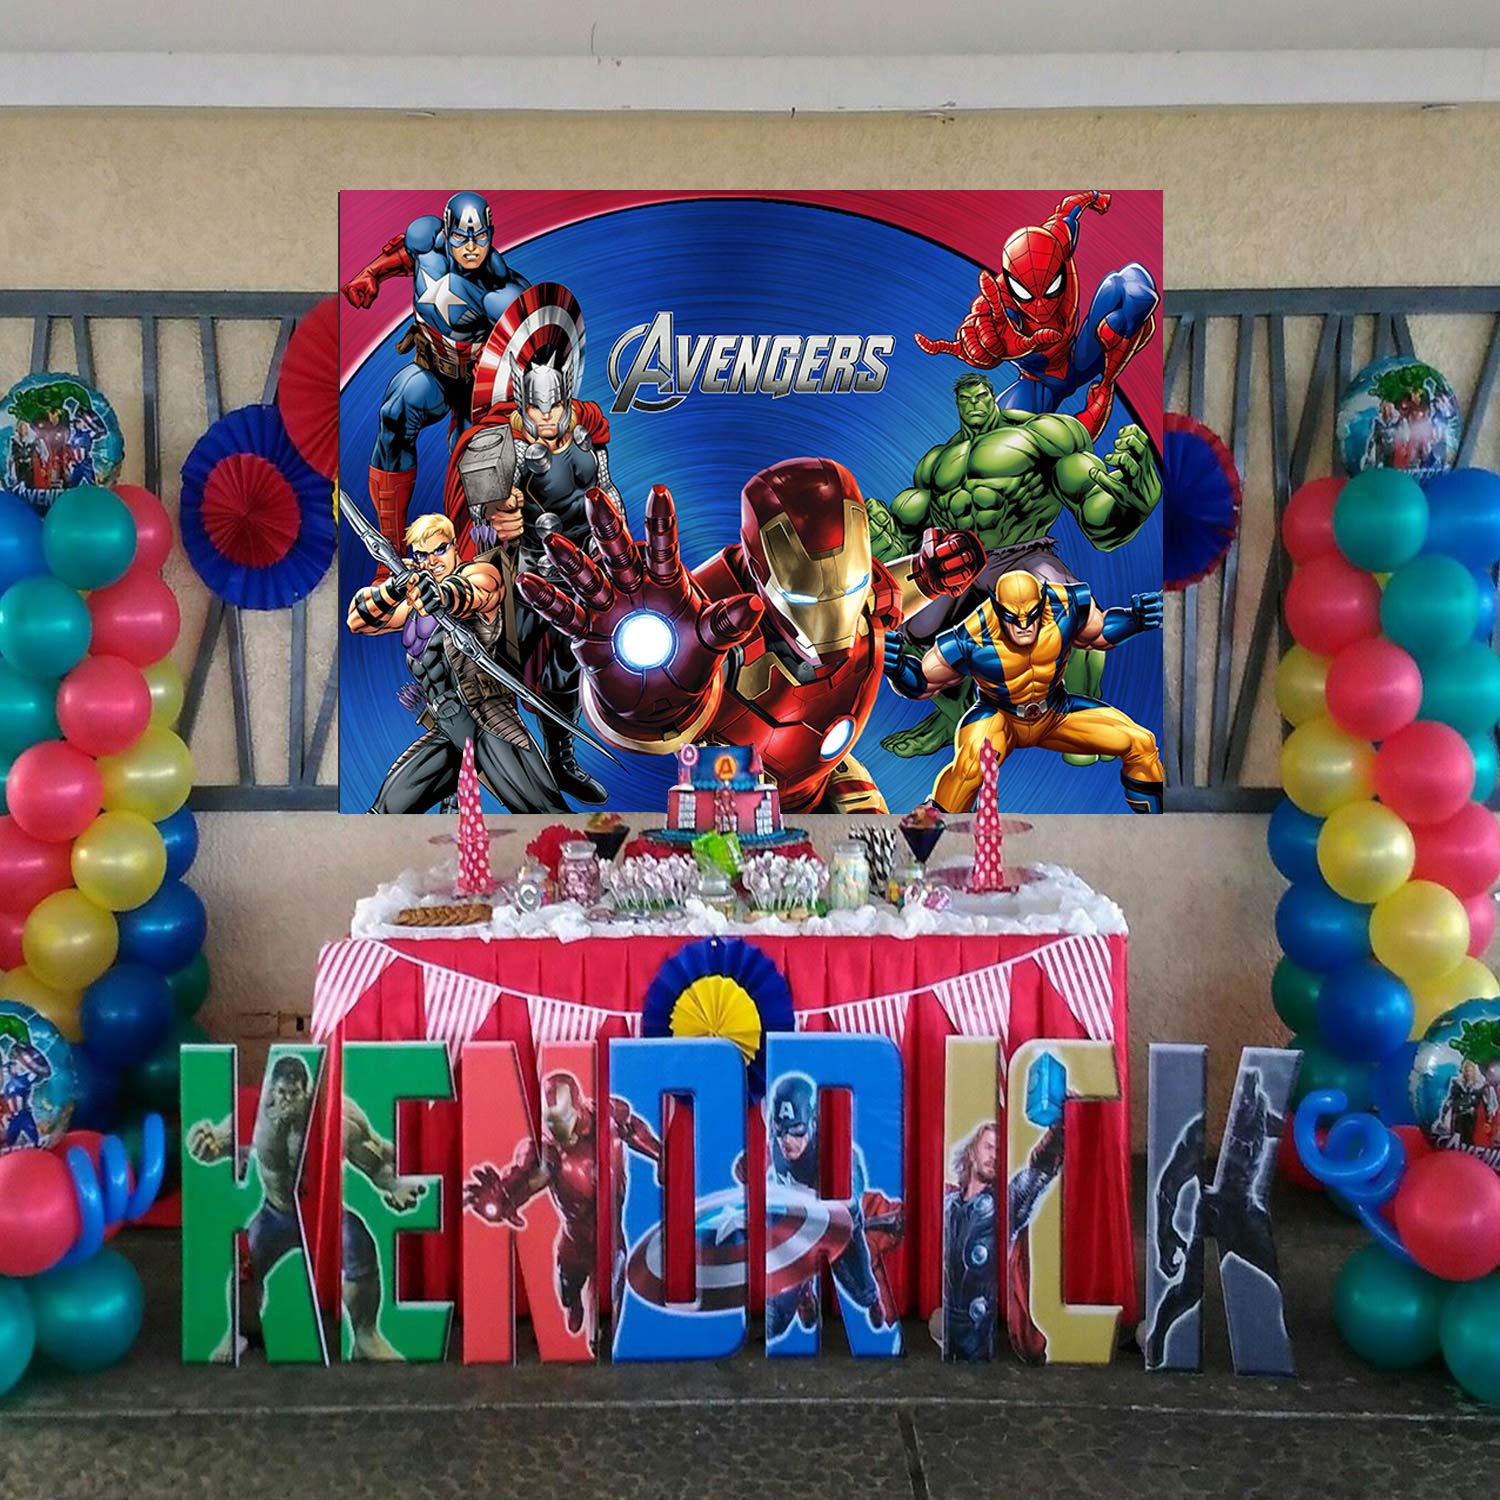 Value Brand Avengers Background 7x5ft Marvel Backdrop